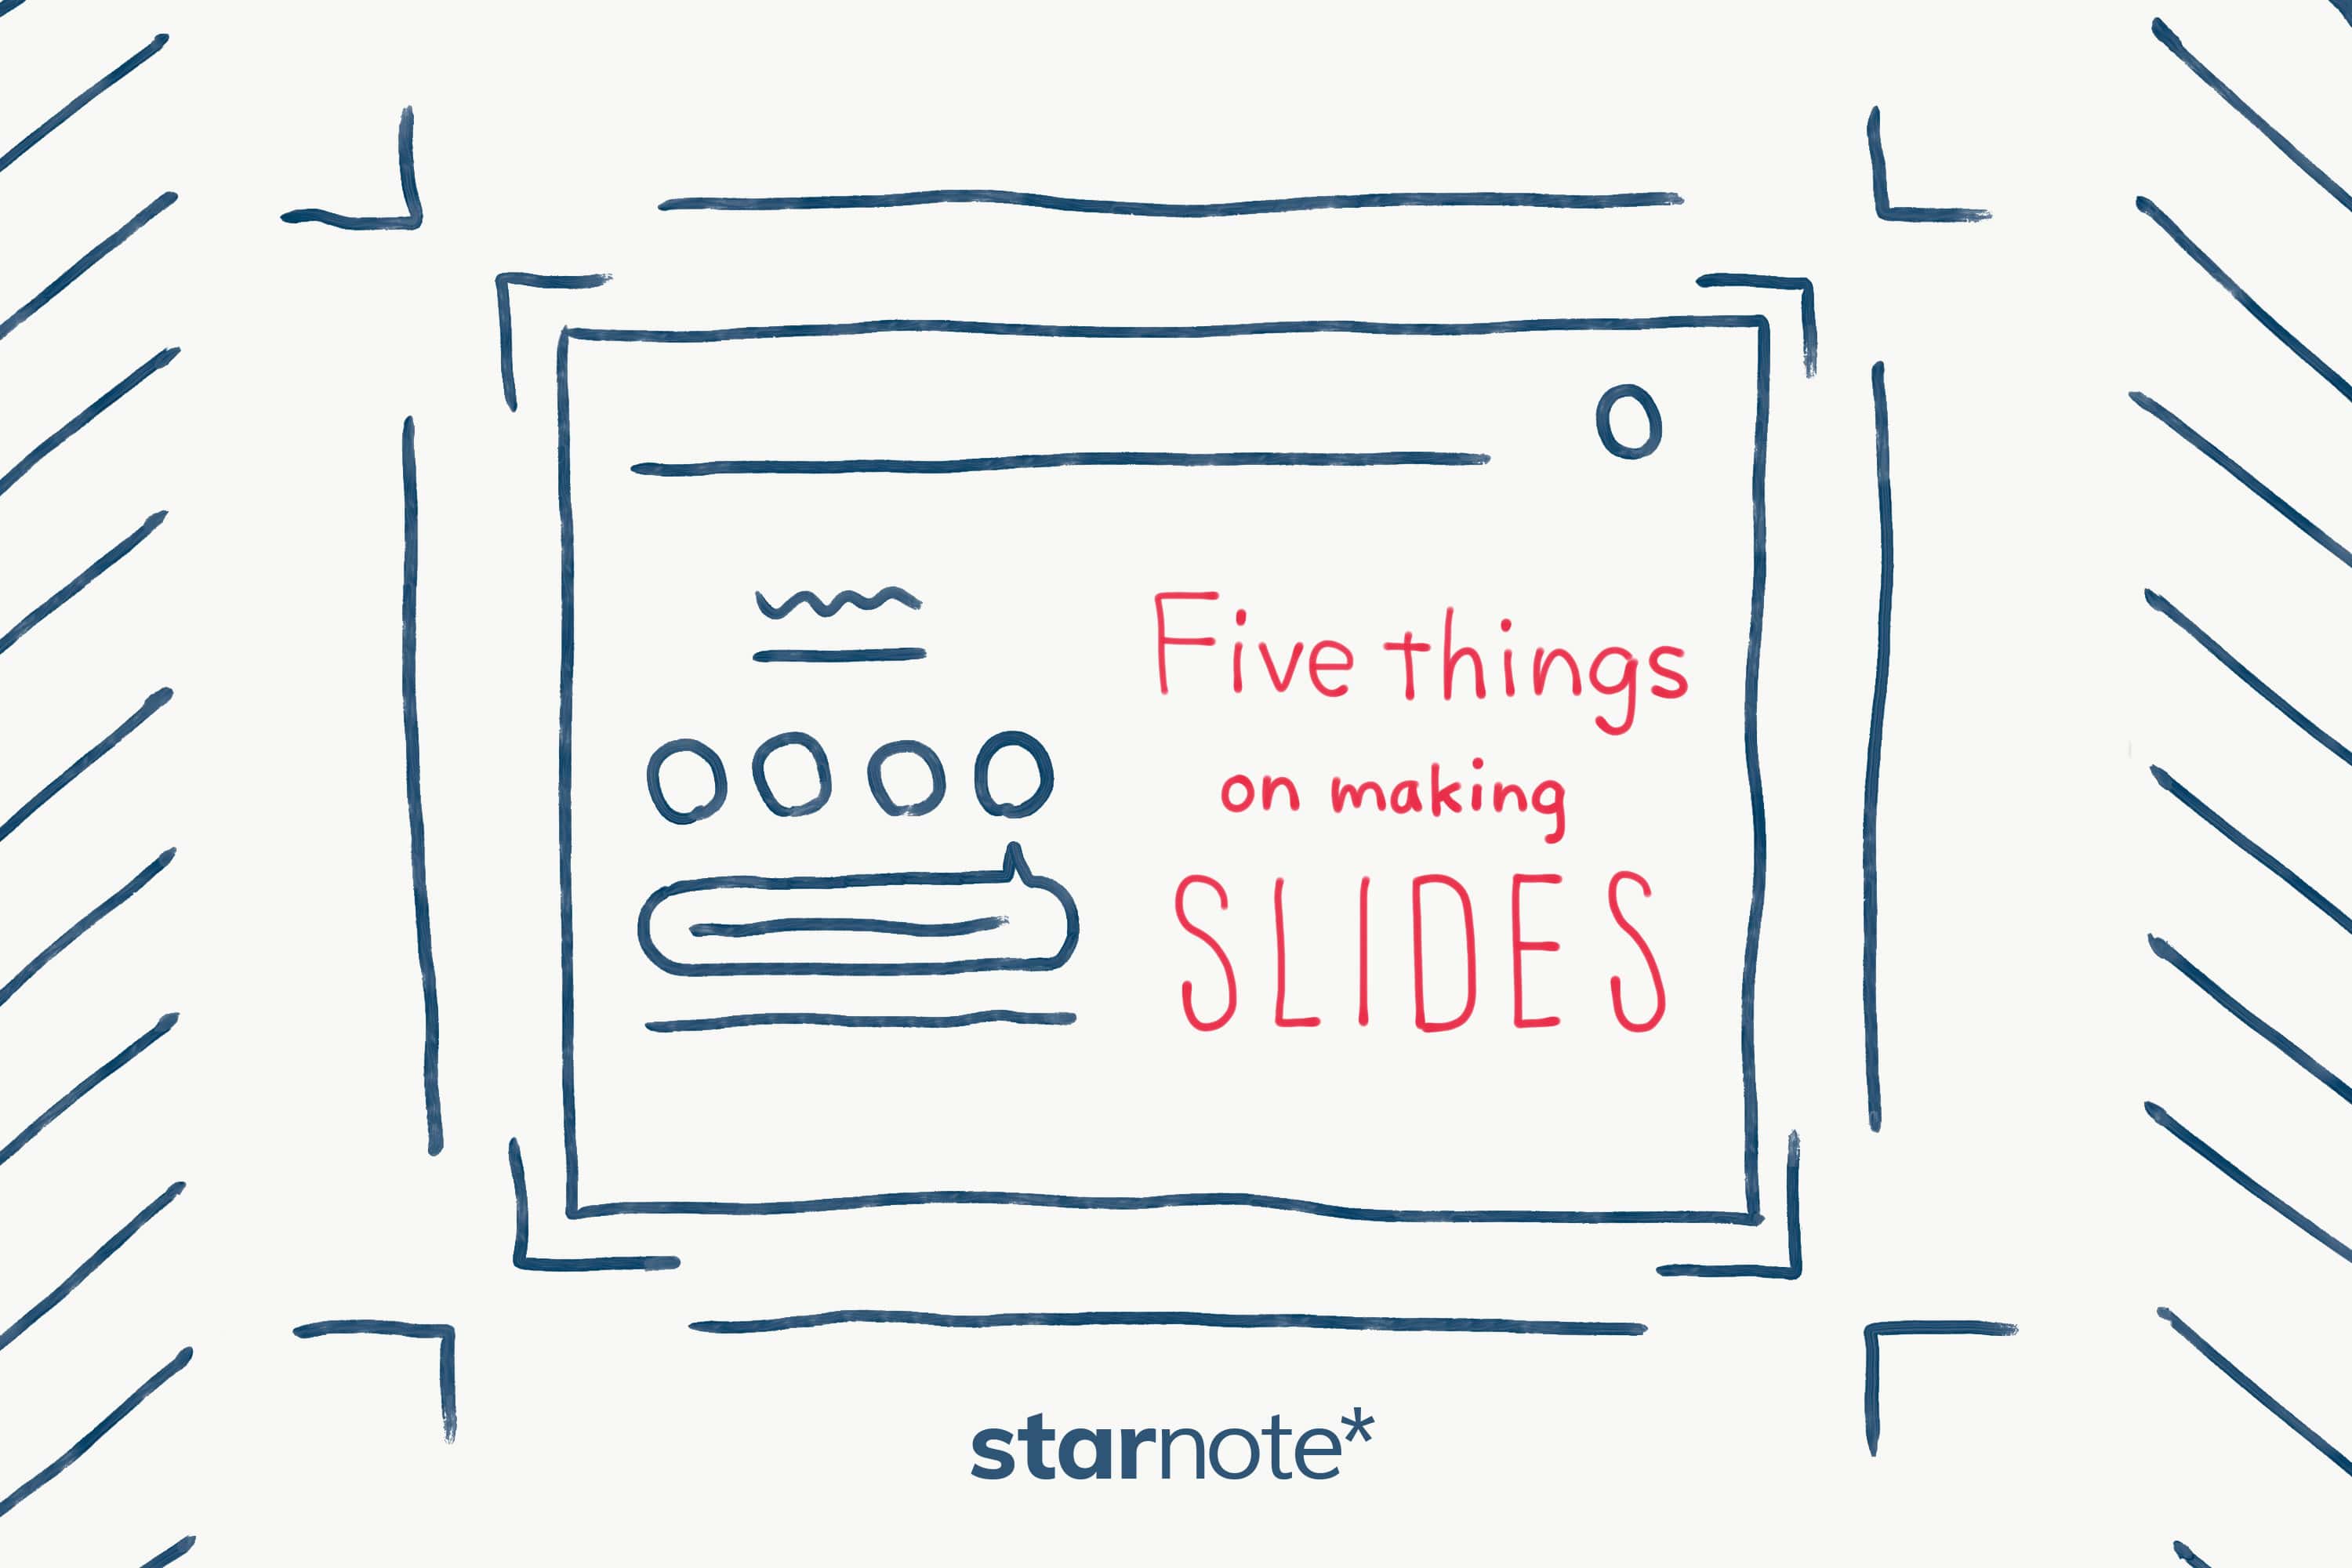 学会発表における スライド と デザイン の 切っても切れない関係 Starnote